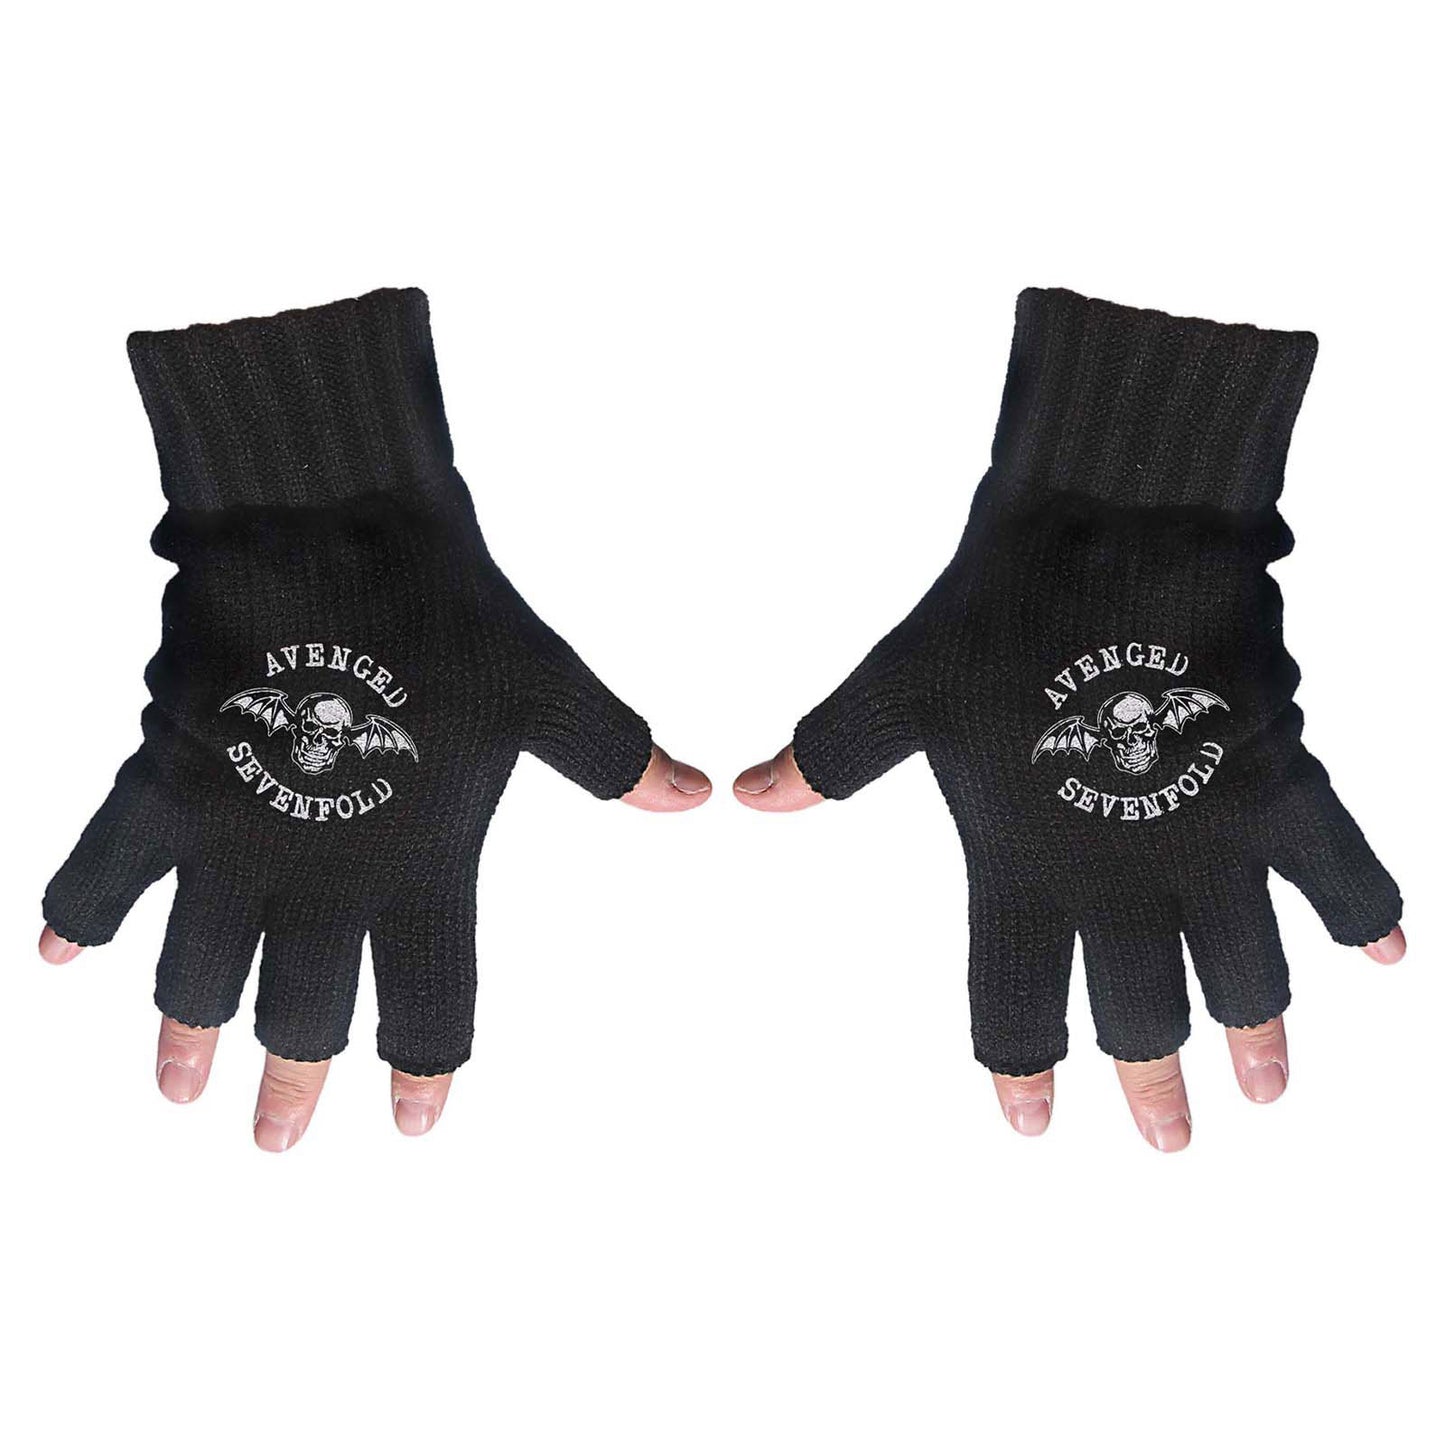 Avenged Sevenfold Unisex Fingerless Gloves: Death Bat